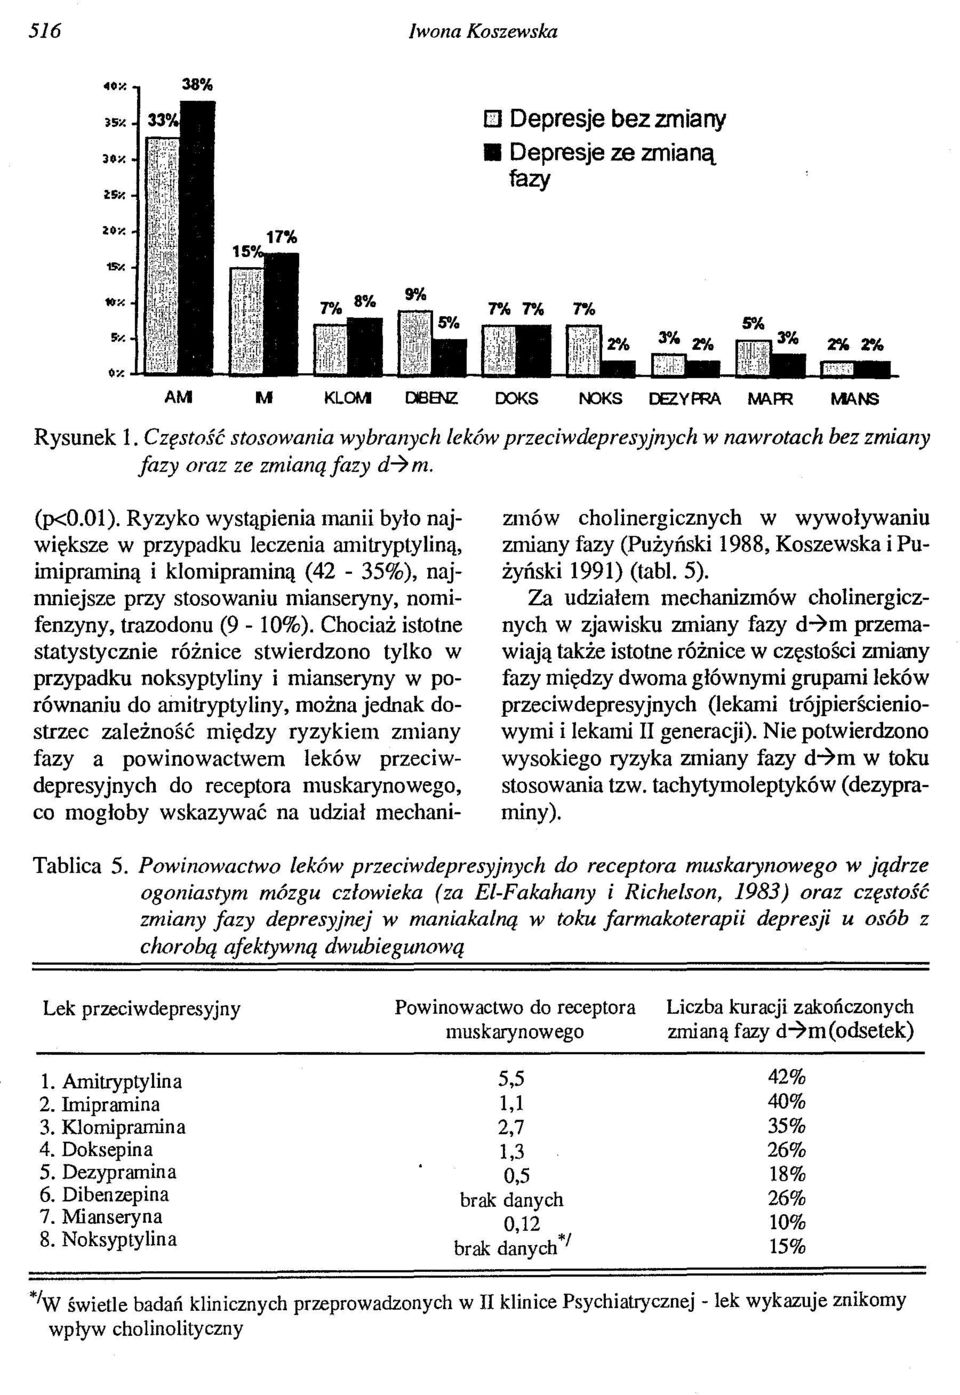 Ryzyko wystąpienia manii było największe w przypadku leczenia amitryptyliną, imipraminą i klonupraminą (42-35%), najmniejsze przy stosowaniu mianseryny, nomifenzyny, trazodonu (9-10%).